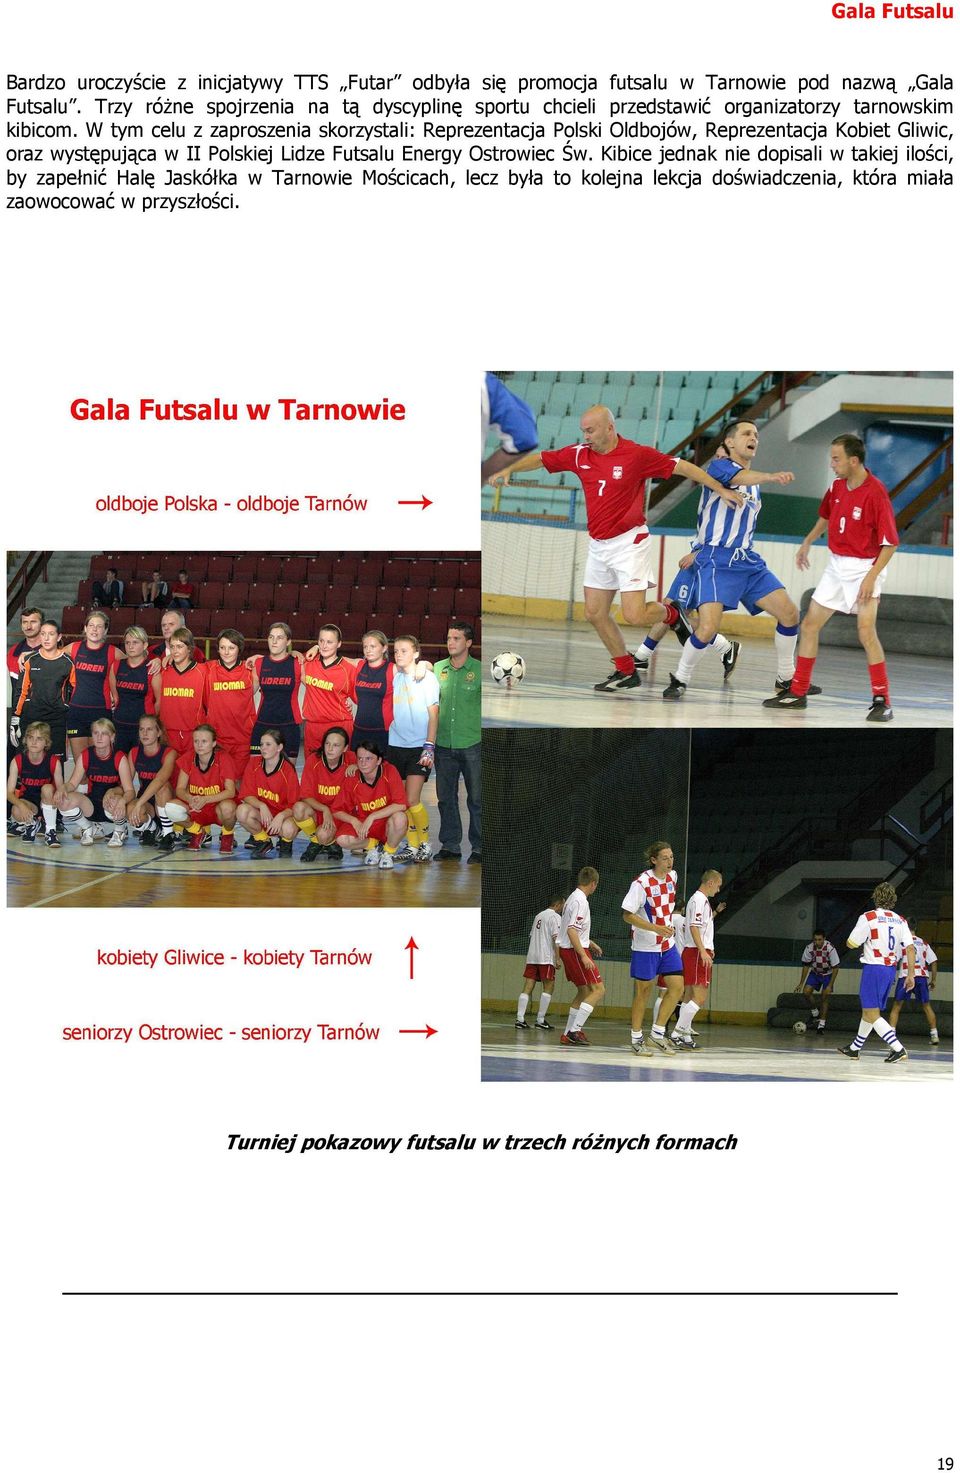 W tym celu z zaproszenia skorzystali: Reprezentacja Polski Oldbojów, Reprezentacja Kobiet Gliwic, oraz występująca w II Polskiej Lidze Futsalu Energy